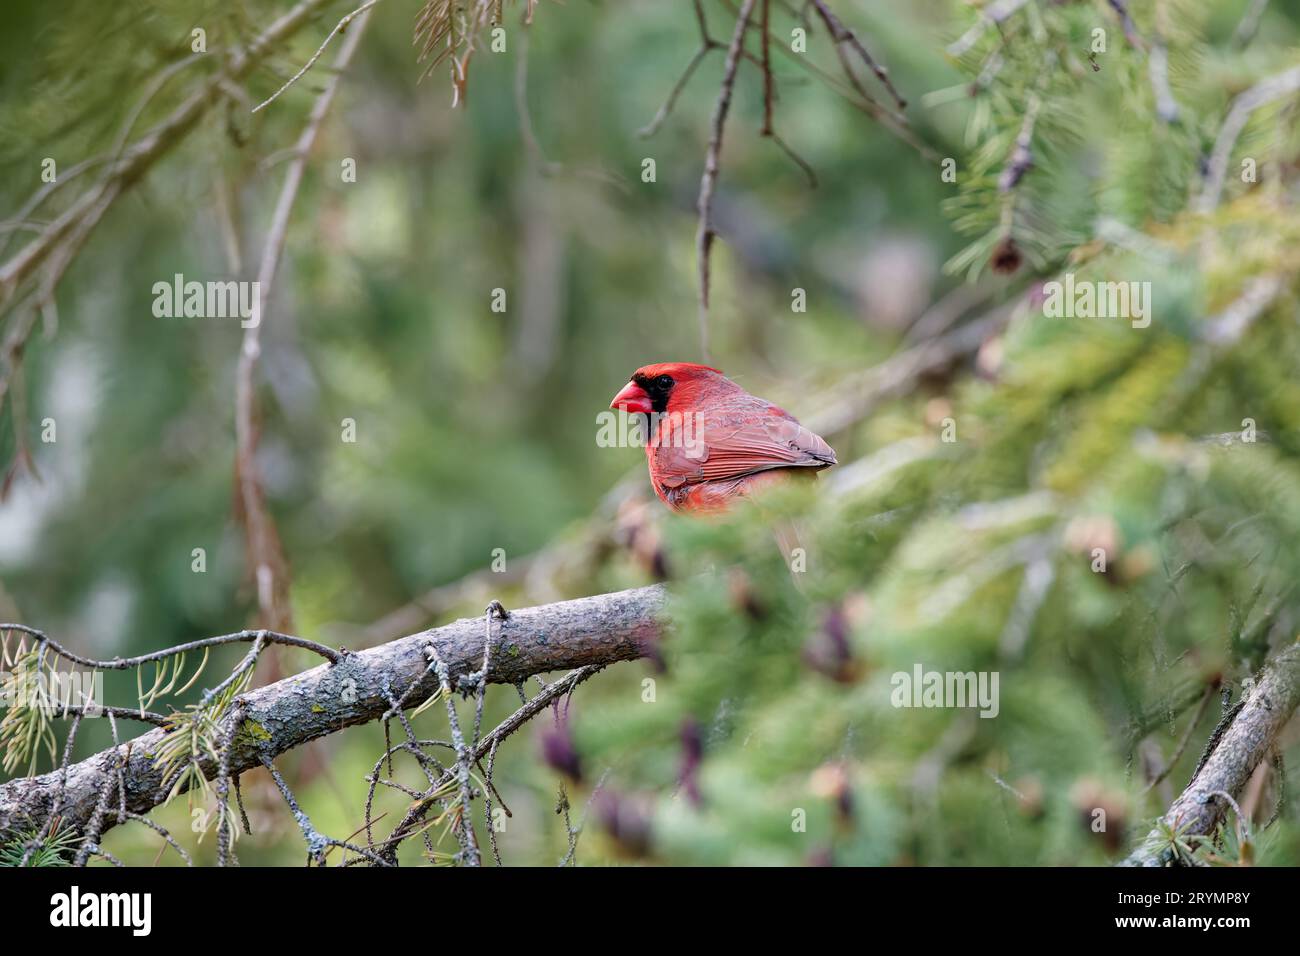 The northern cardinal (Cardinalis cardinalis). Stock Photo